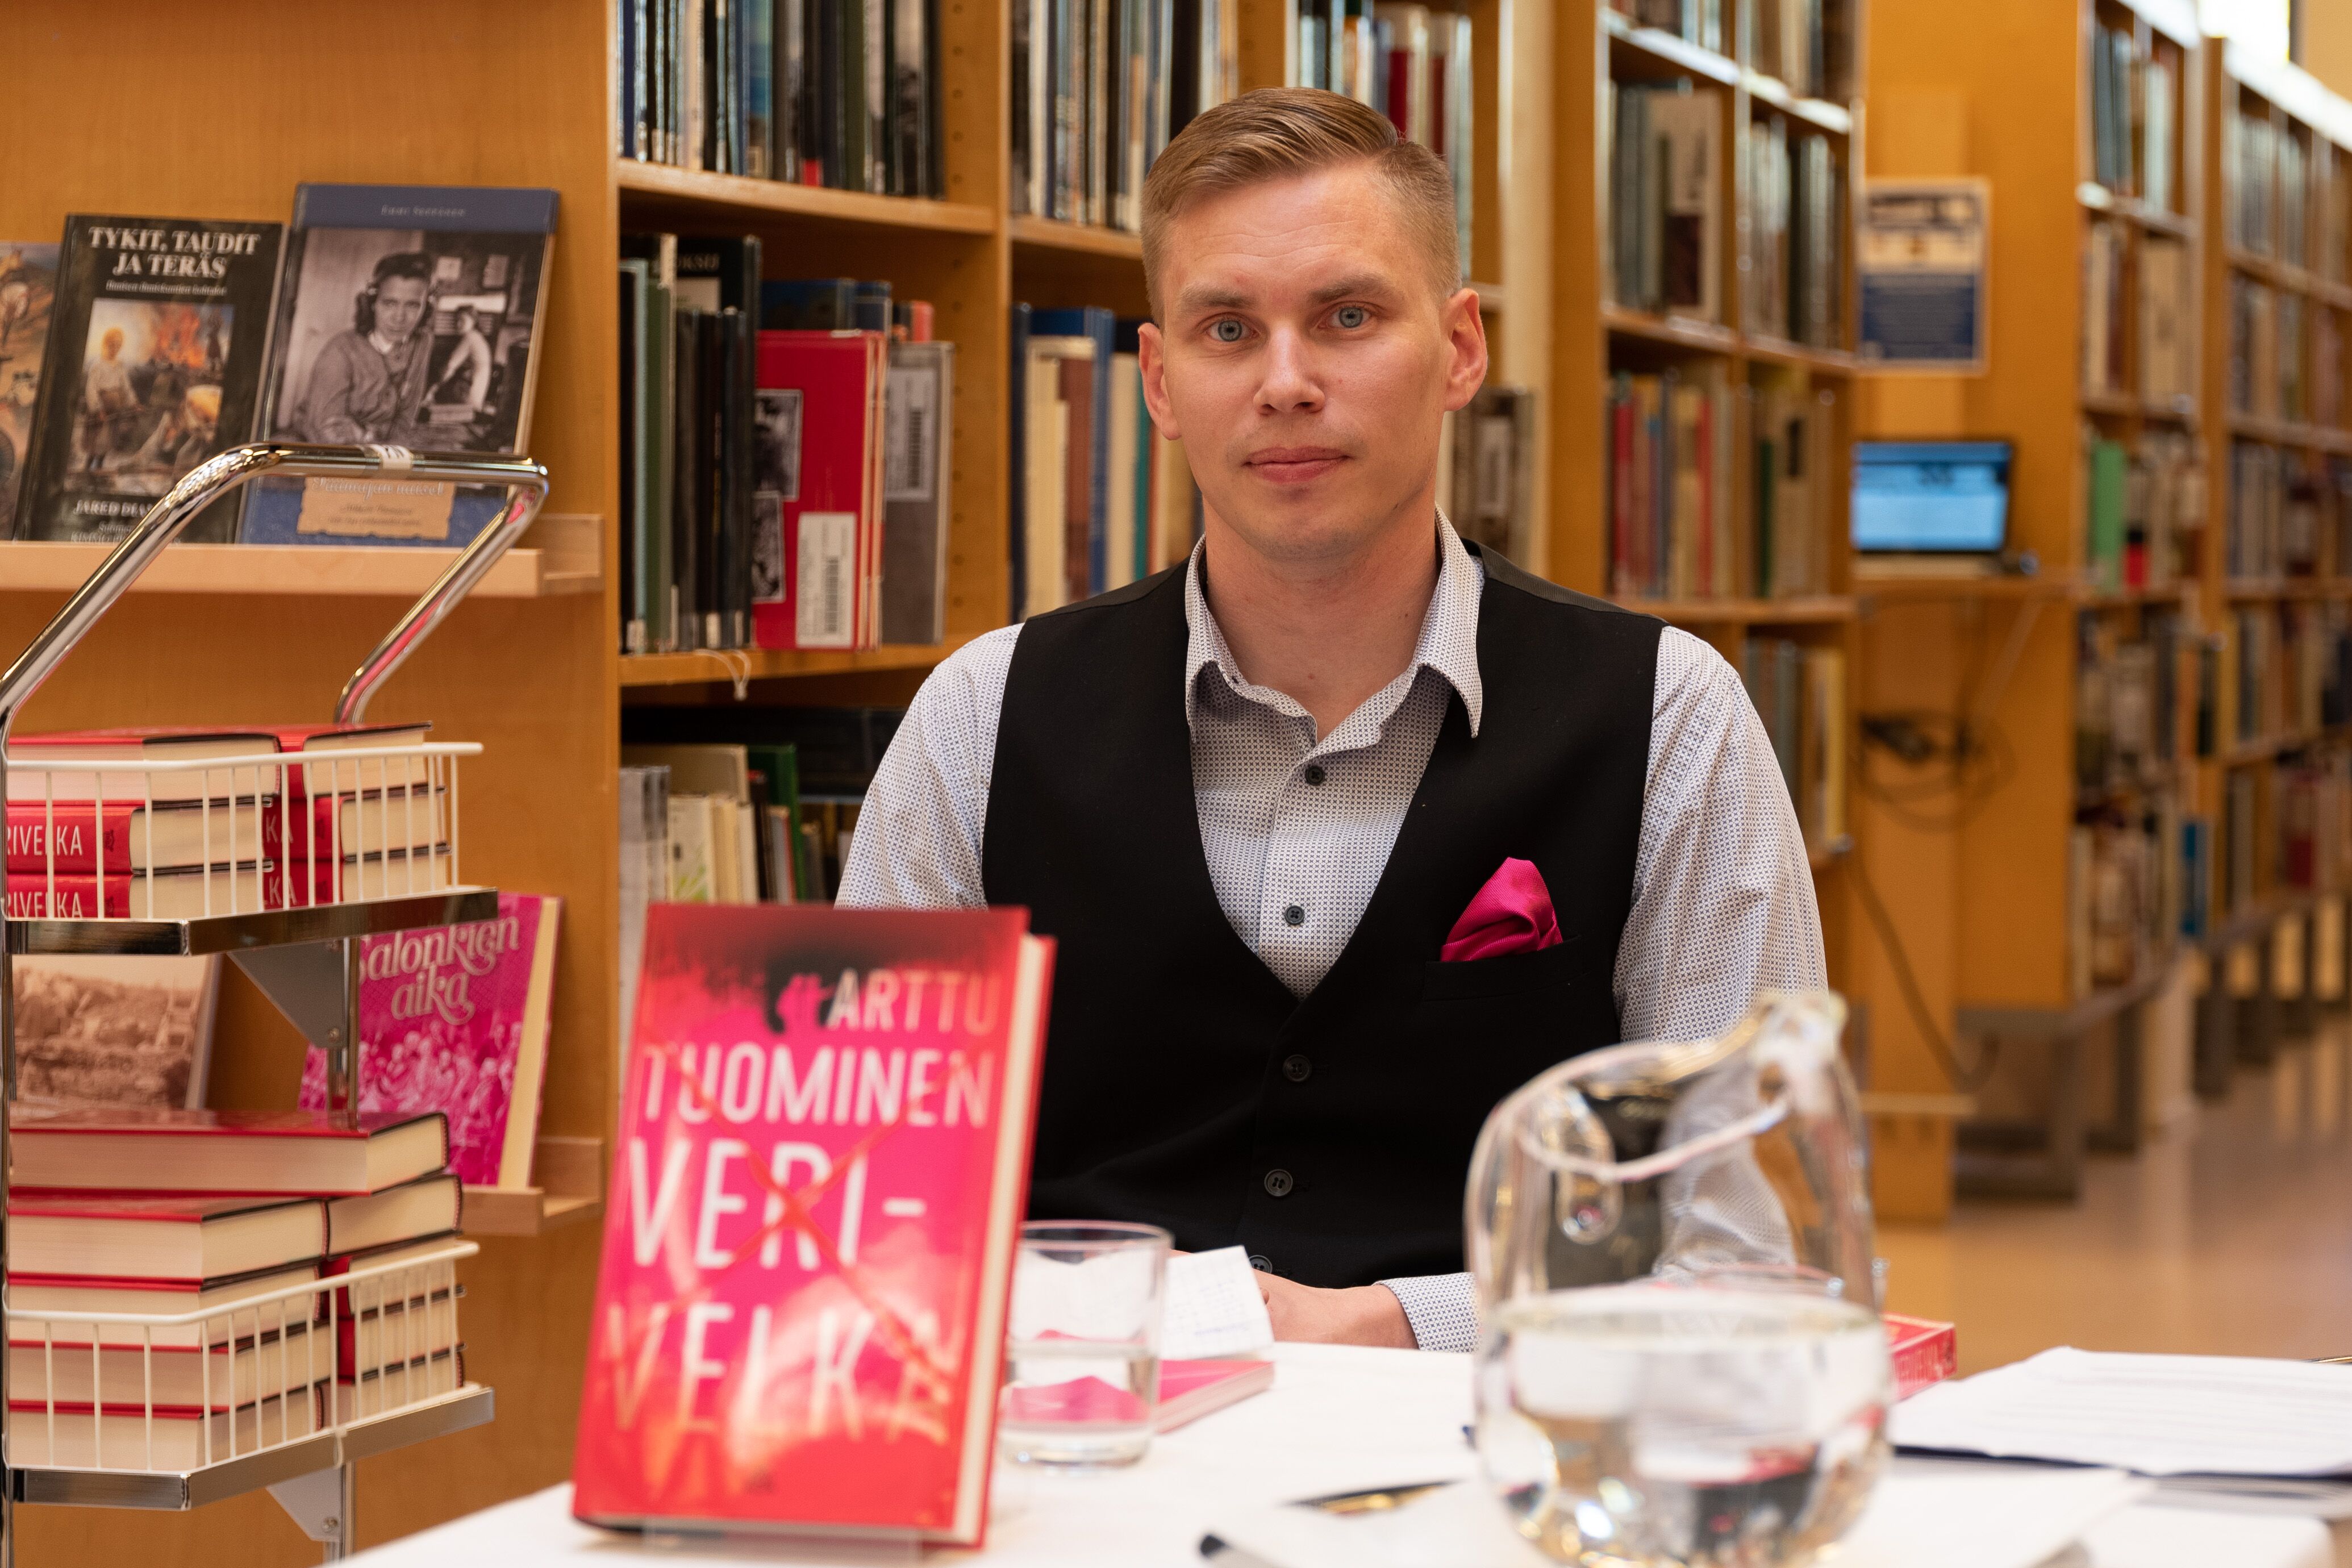 Arttu Tuominen - Erstes Buch der Delta-Serie: Buchvorstellung in der Stadtbibliothek Pori 2019, Foto: Kari Pyy